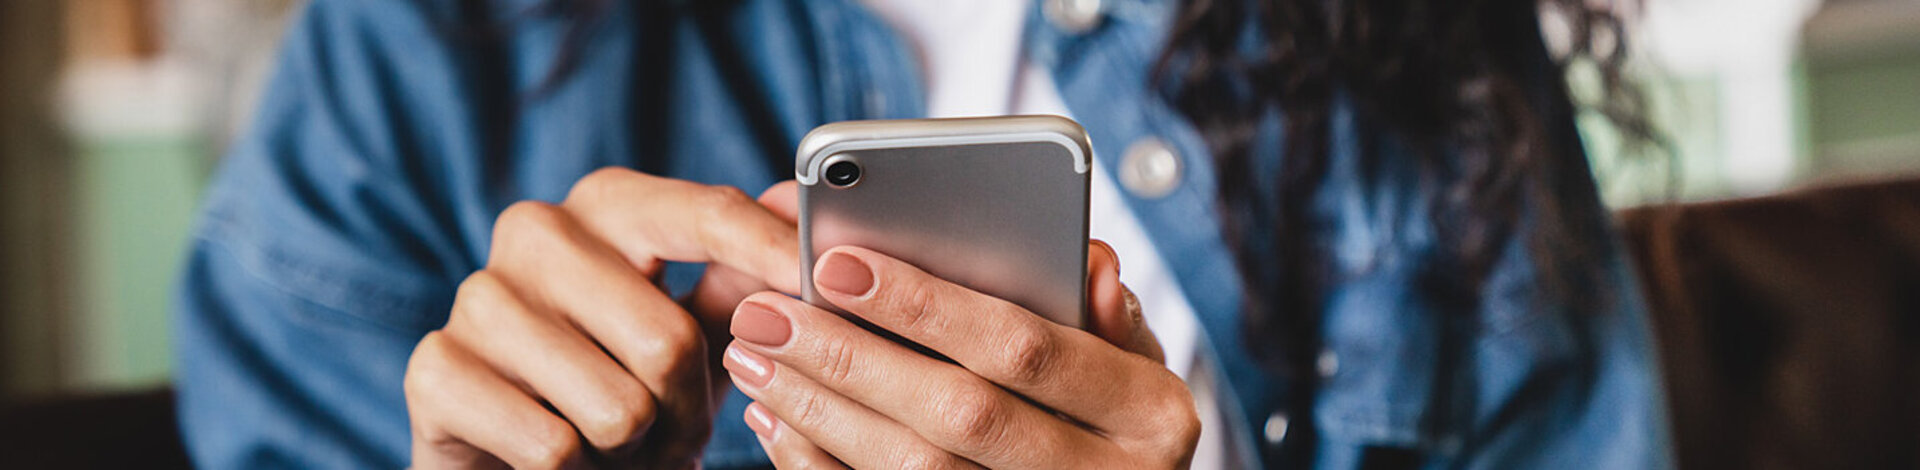 Eine junge Frau betrachtet ihr Smartphone. Die AOK bietet ihr die Möglichkeit einer elektronischen Patientenakte.